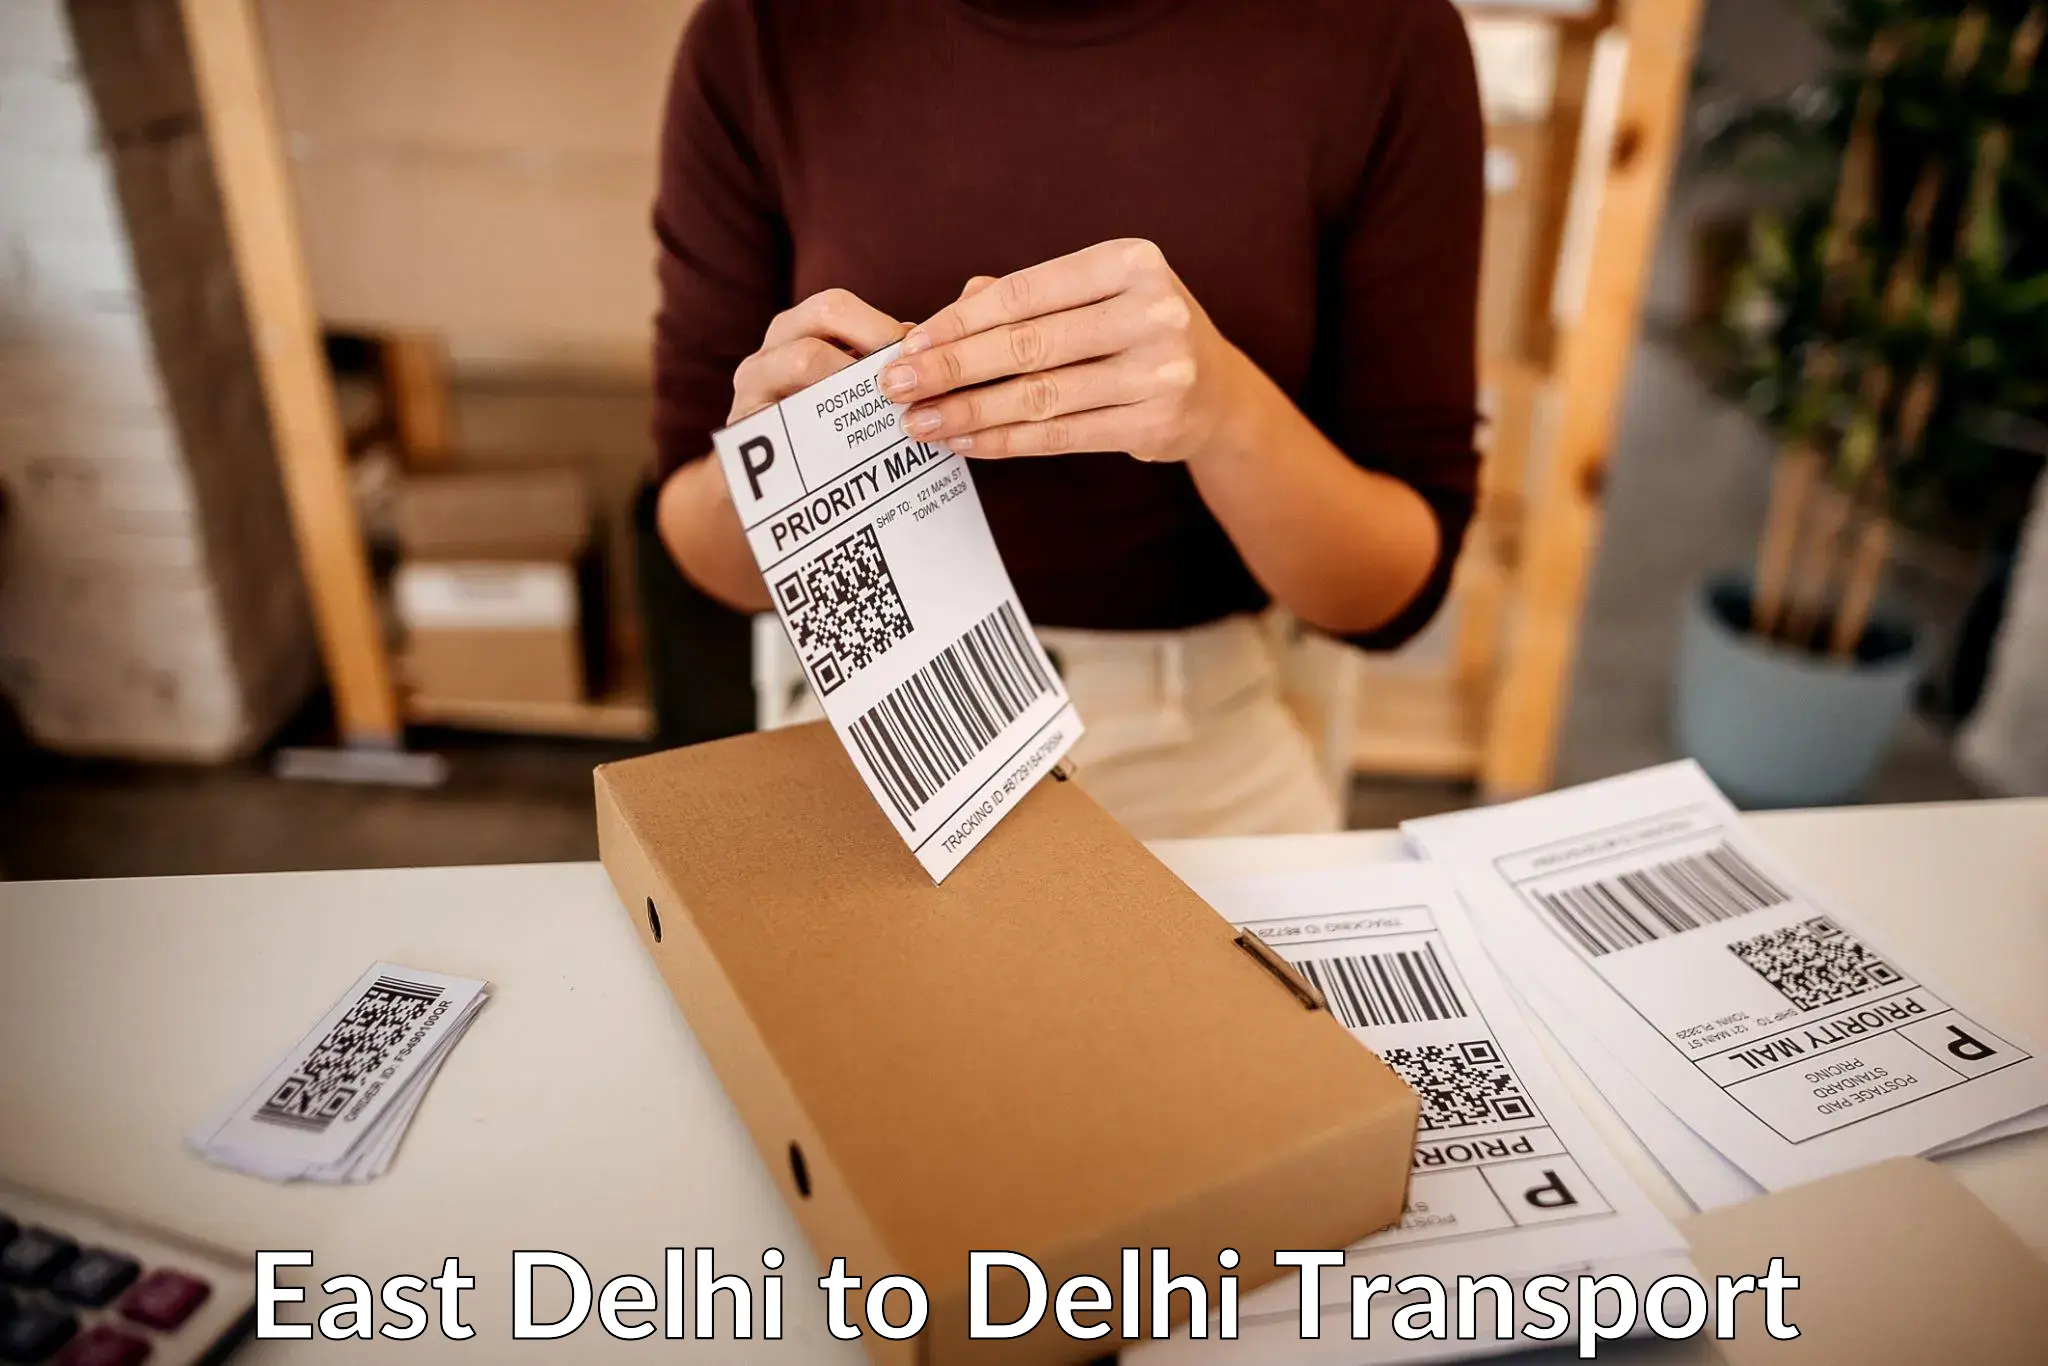 India truck logistics services East Delhi to Jhilmil